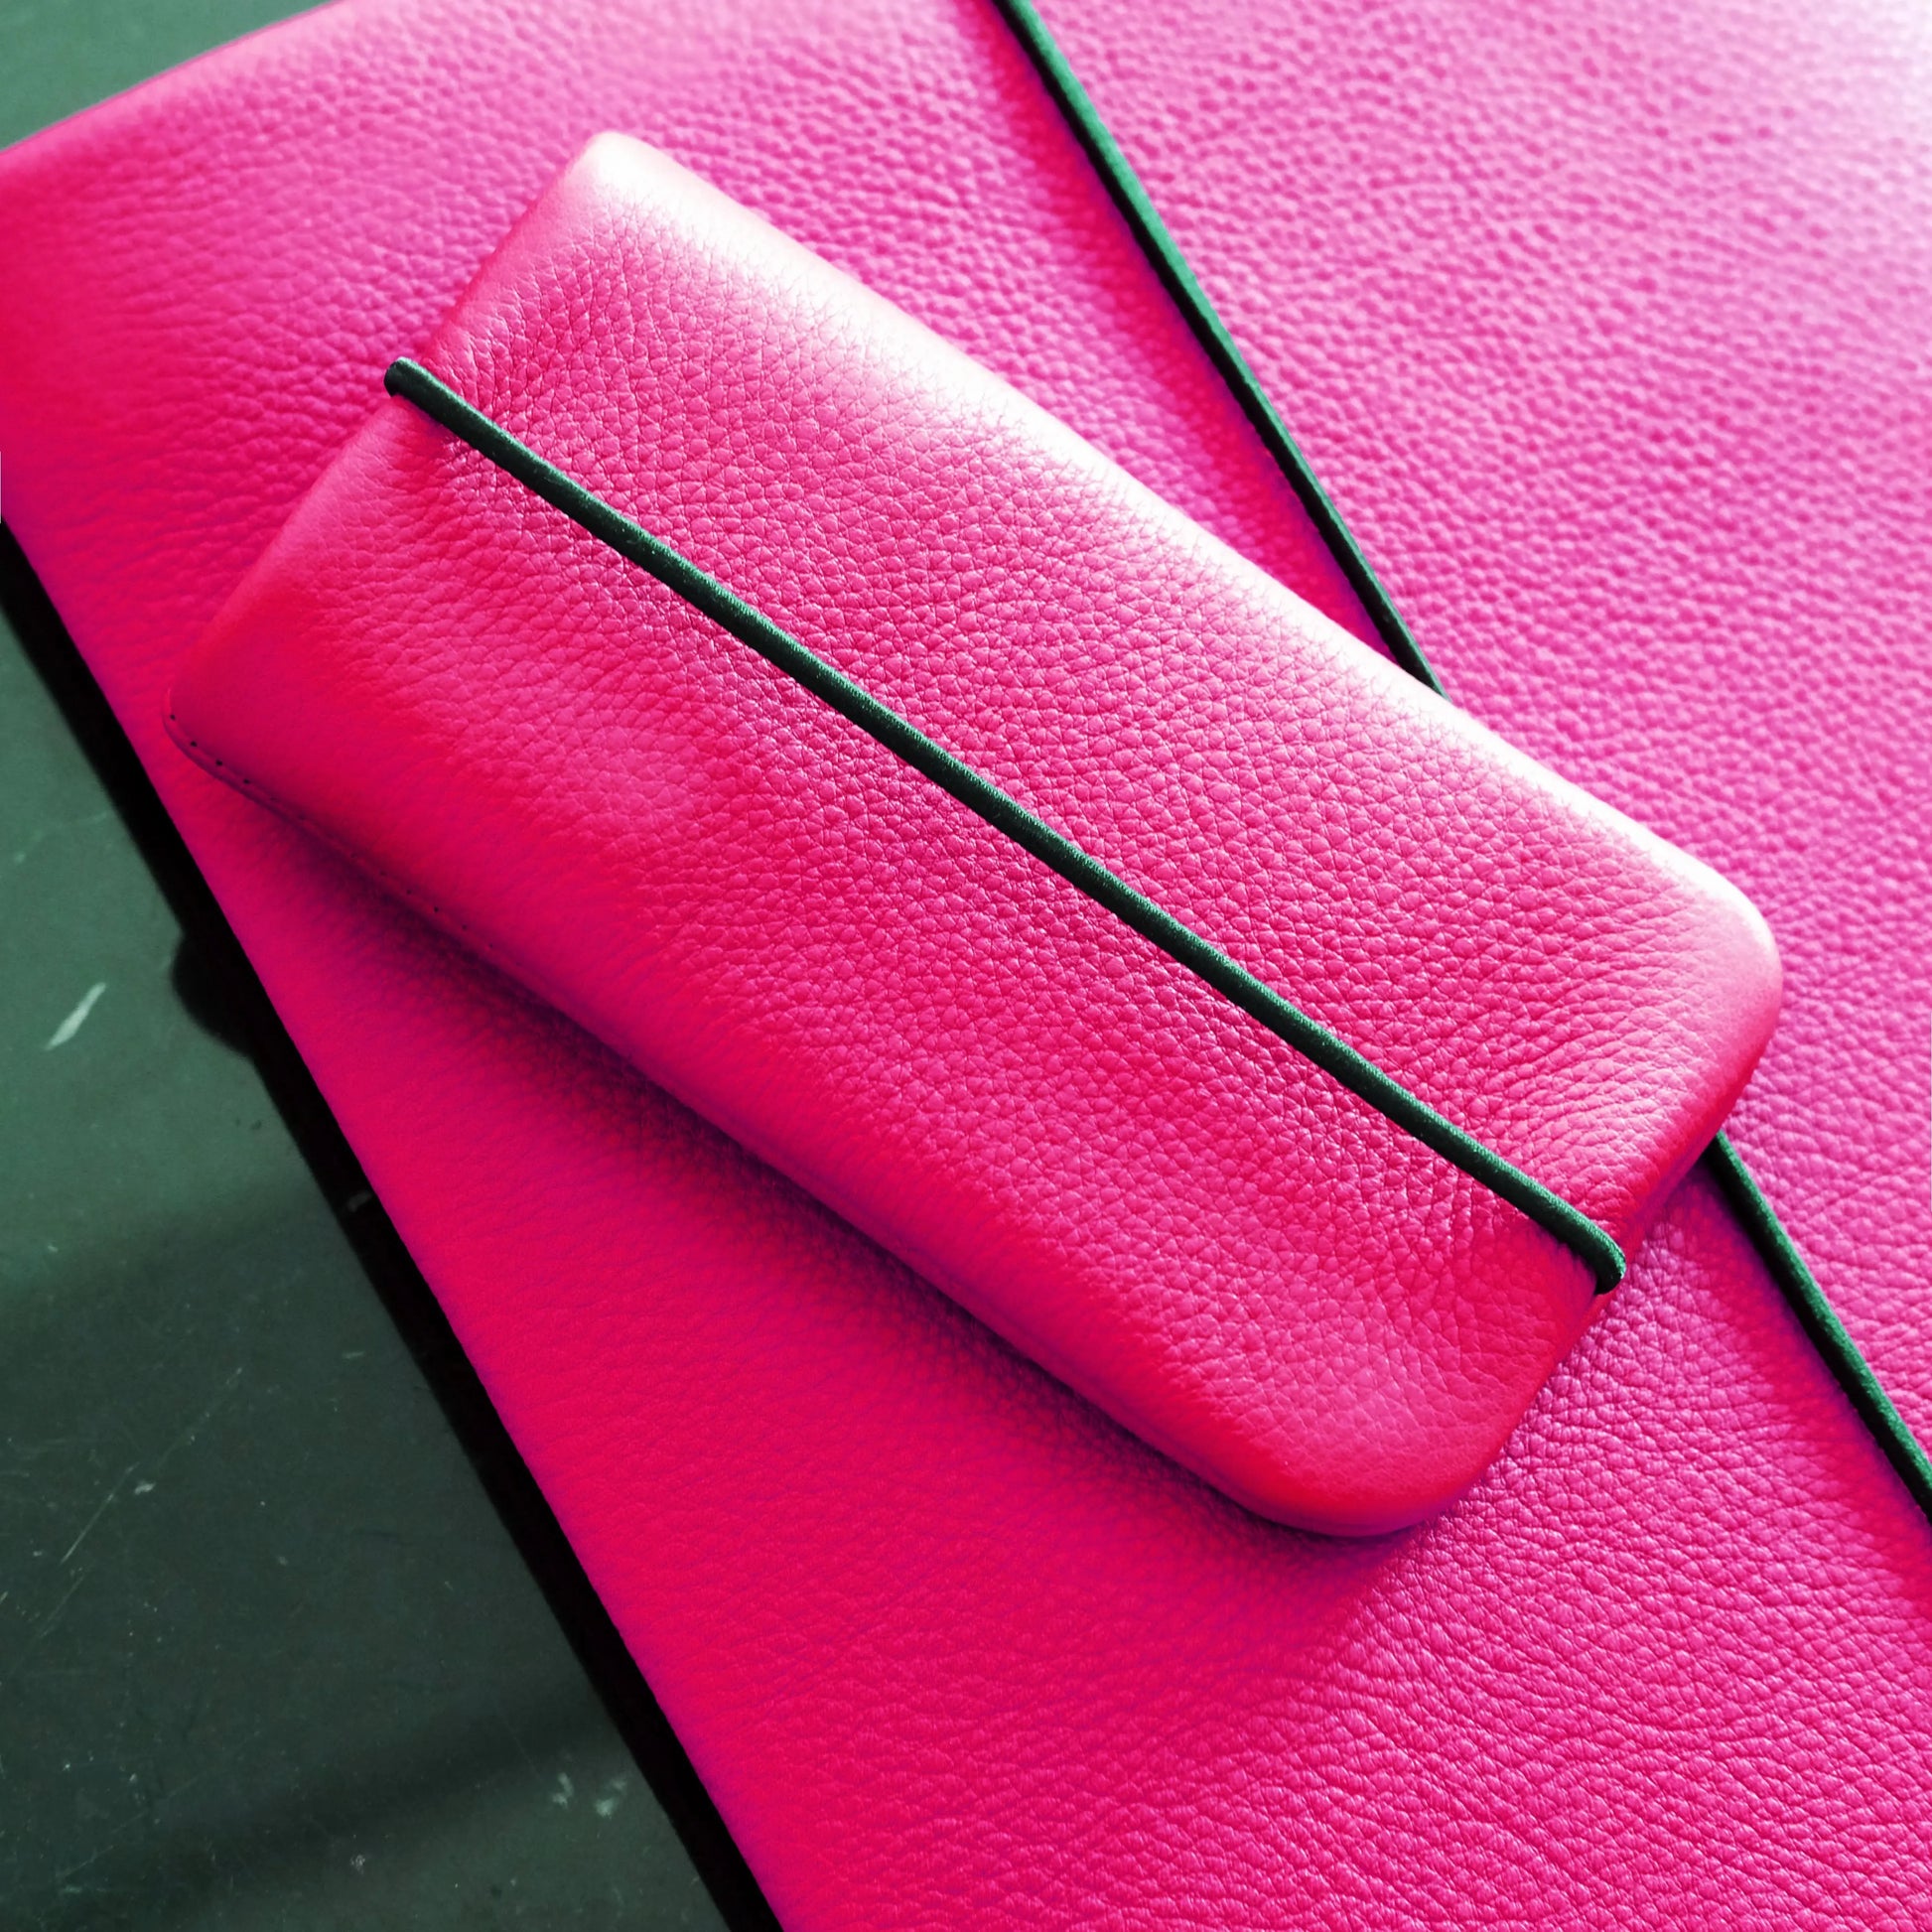 iPhone Hülle aus Leder in neonpink liegt aus passender Macbookhülle